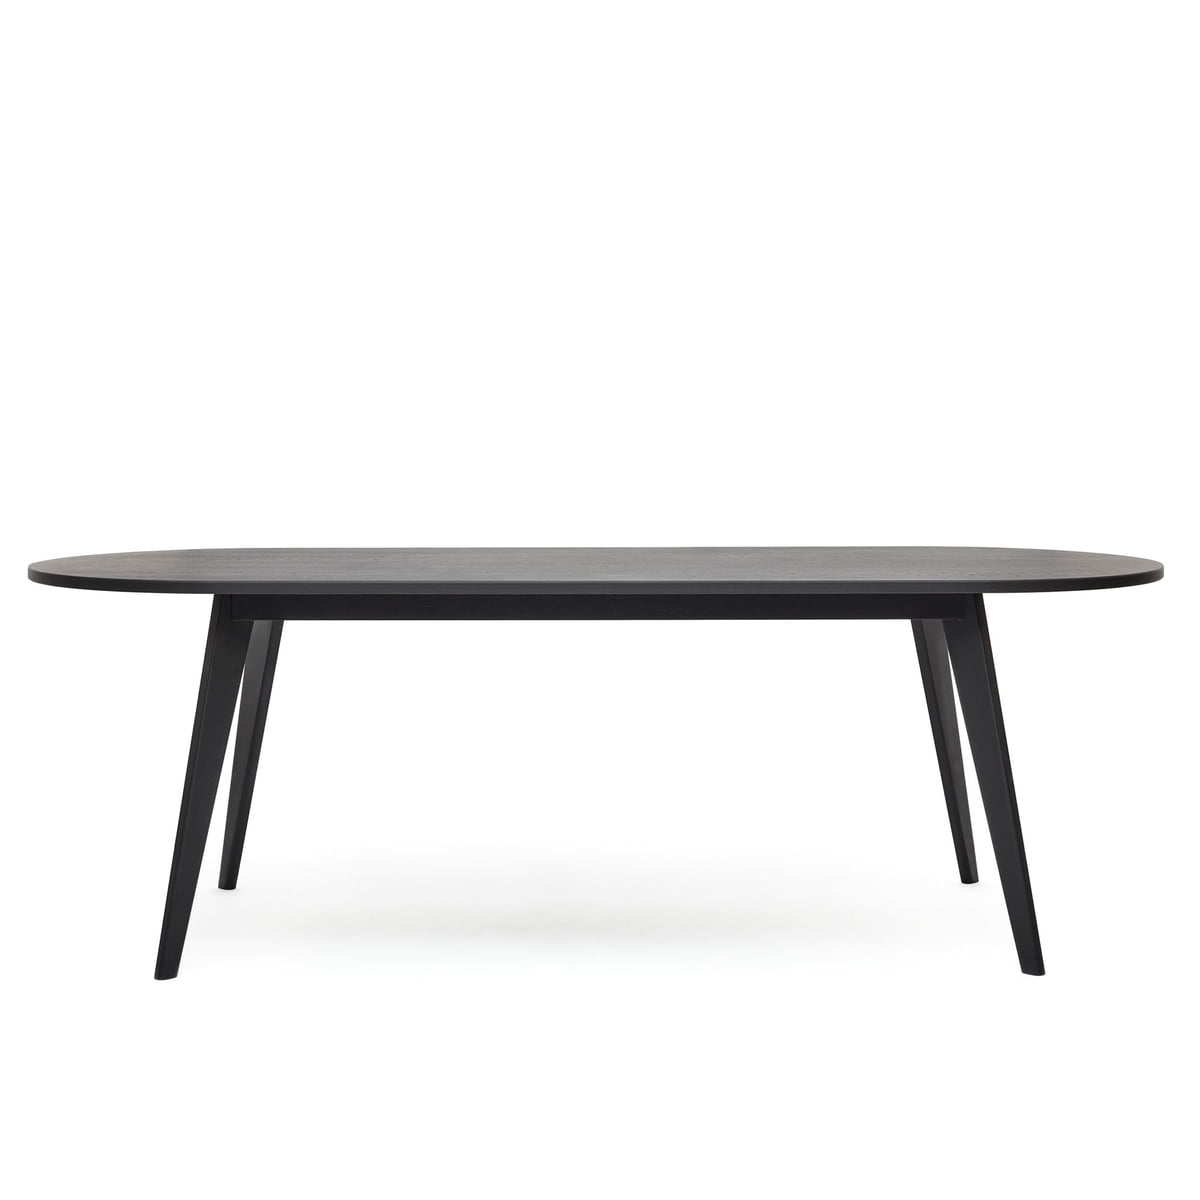 Puik - Archi Table de salle à manger, ovale, 160 x 89 cm, chêne laqué noir (RAL 9005)